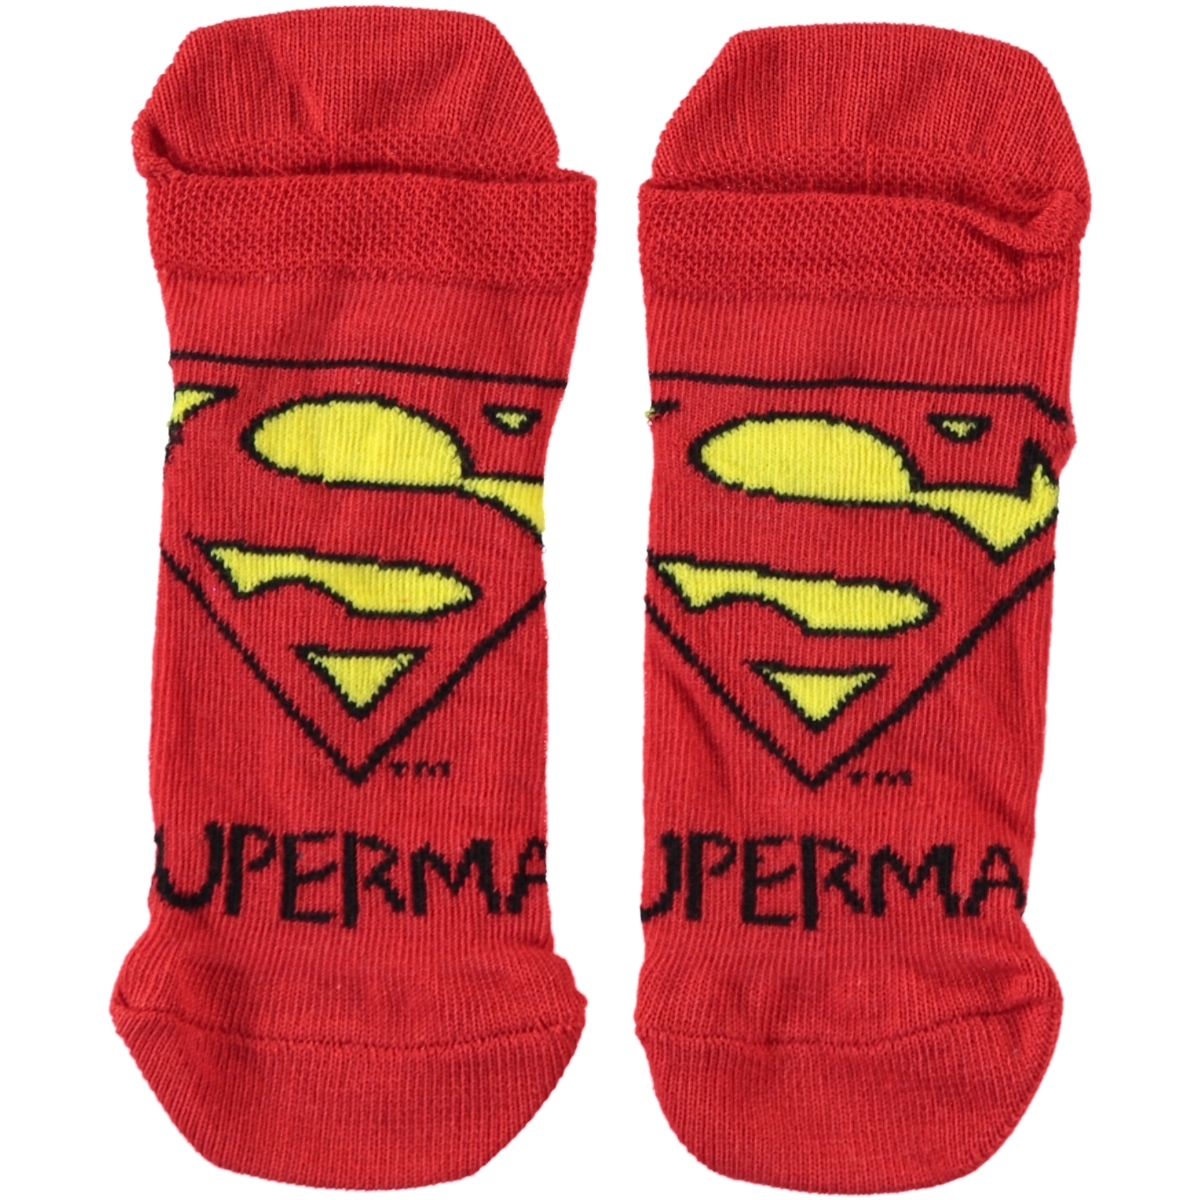 Süperman Erkek Çocuk Çorap 5-9 Yaş Kırmızı